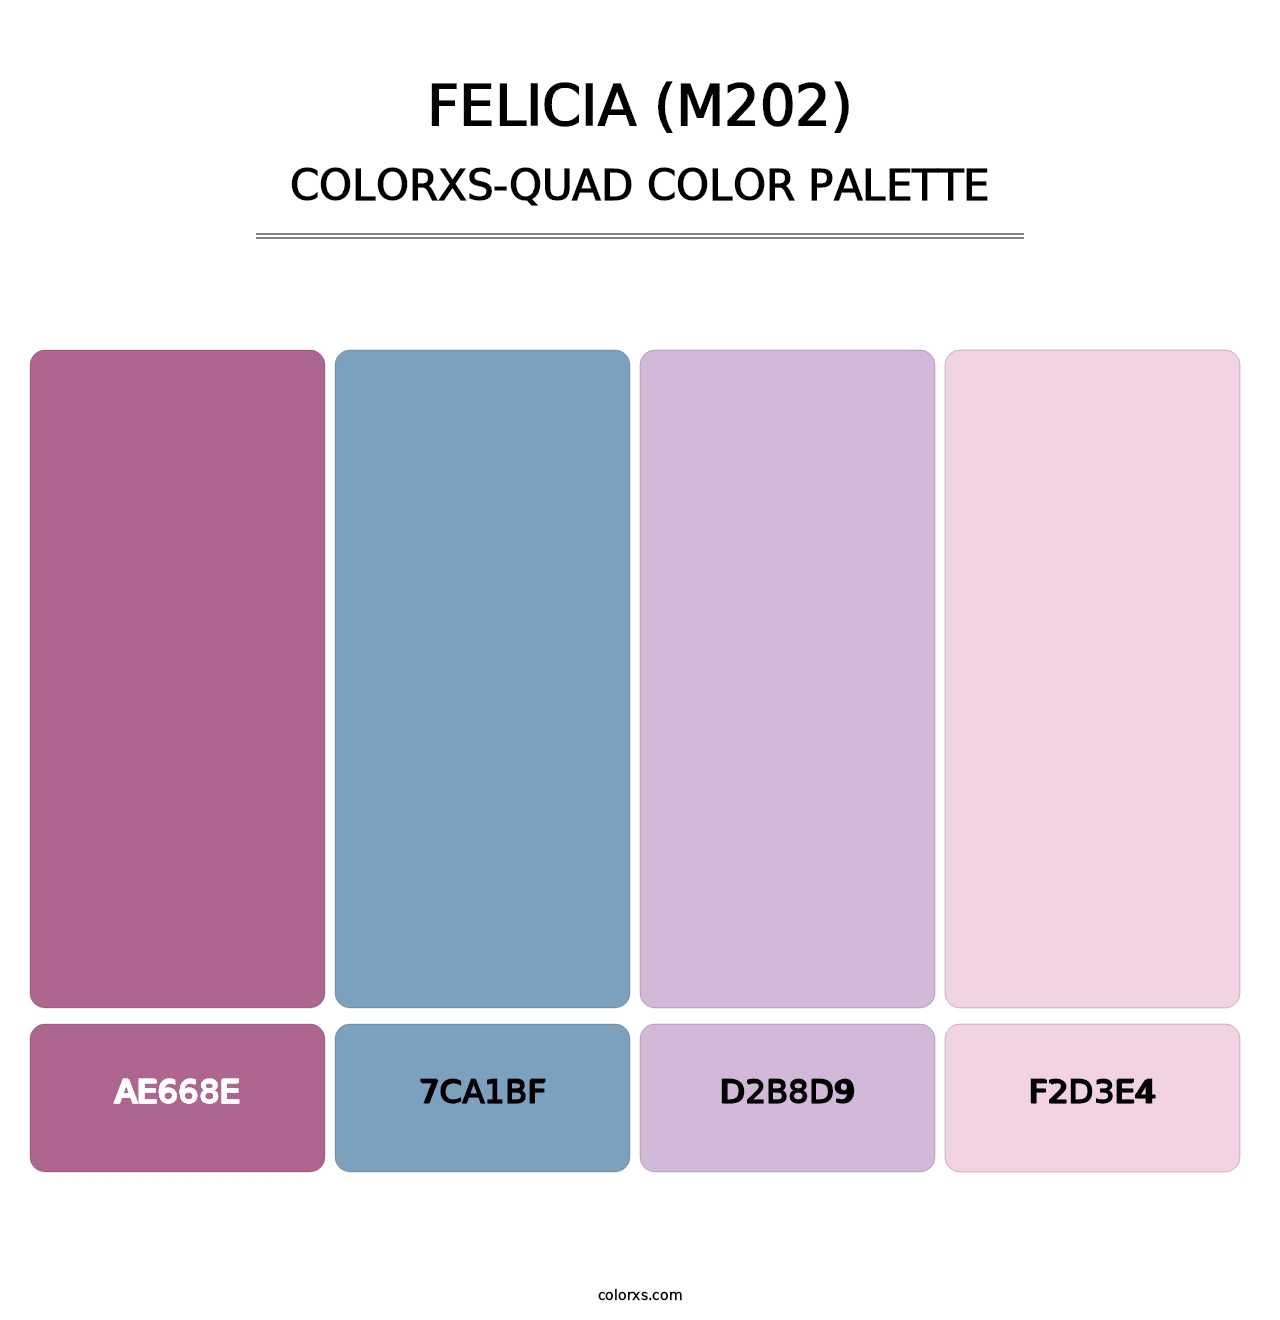 Felicia (M202) - Colorxs Quad Palette